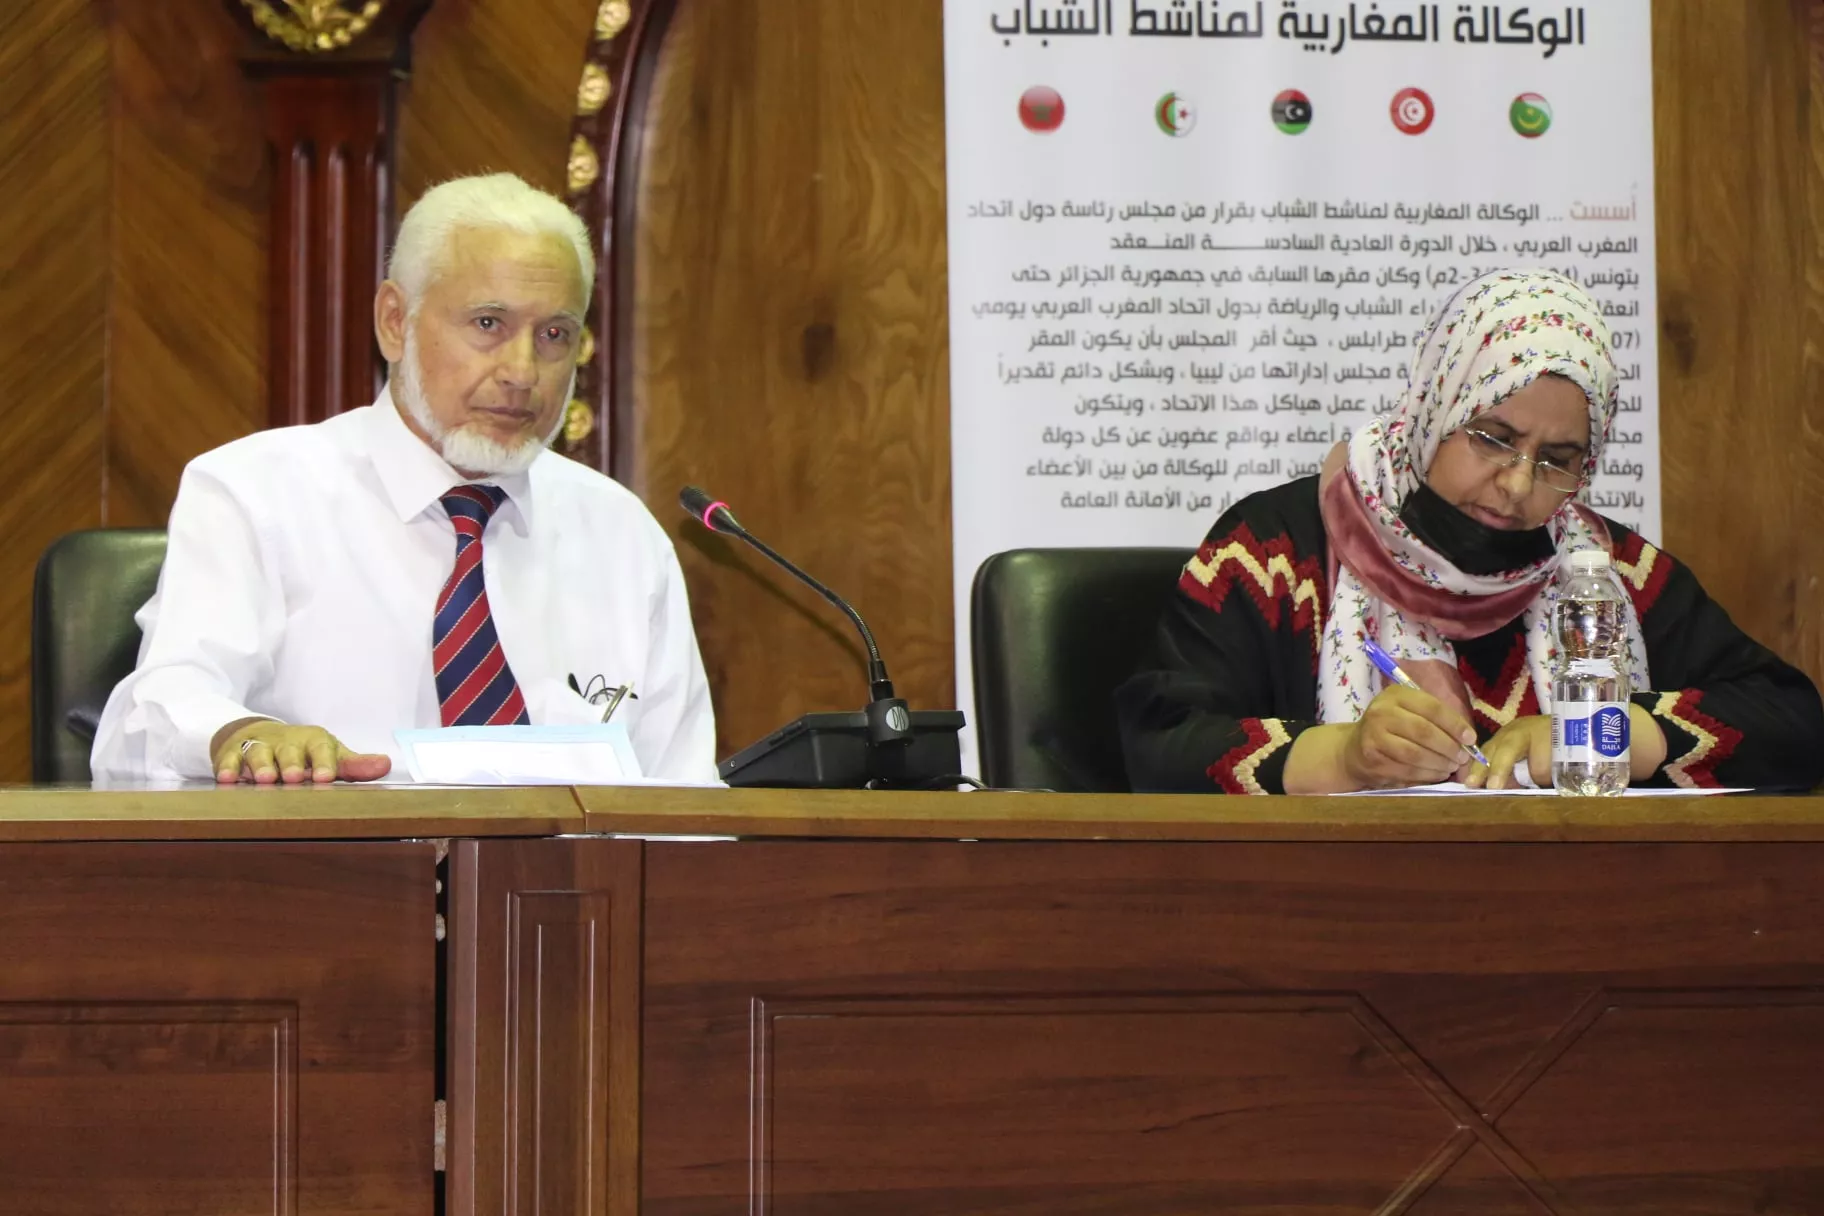 الأكاديمية الليبية تحيي الذِّكْرَى العَاشِرَة لِرَحيلِ العَلاَّمة الدكتور علي فهمي خشيم